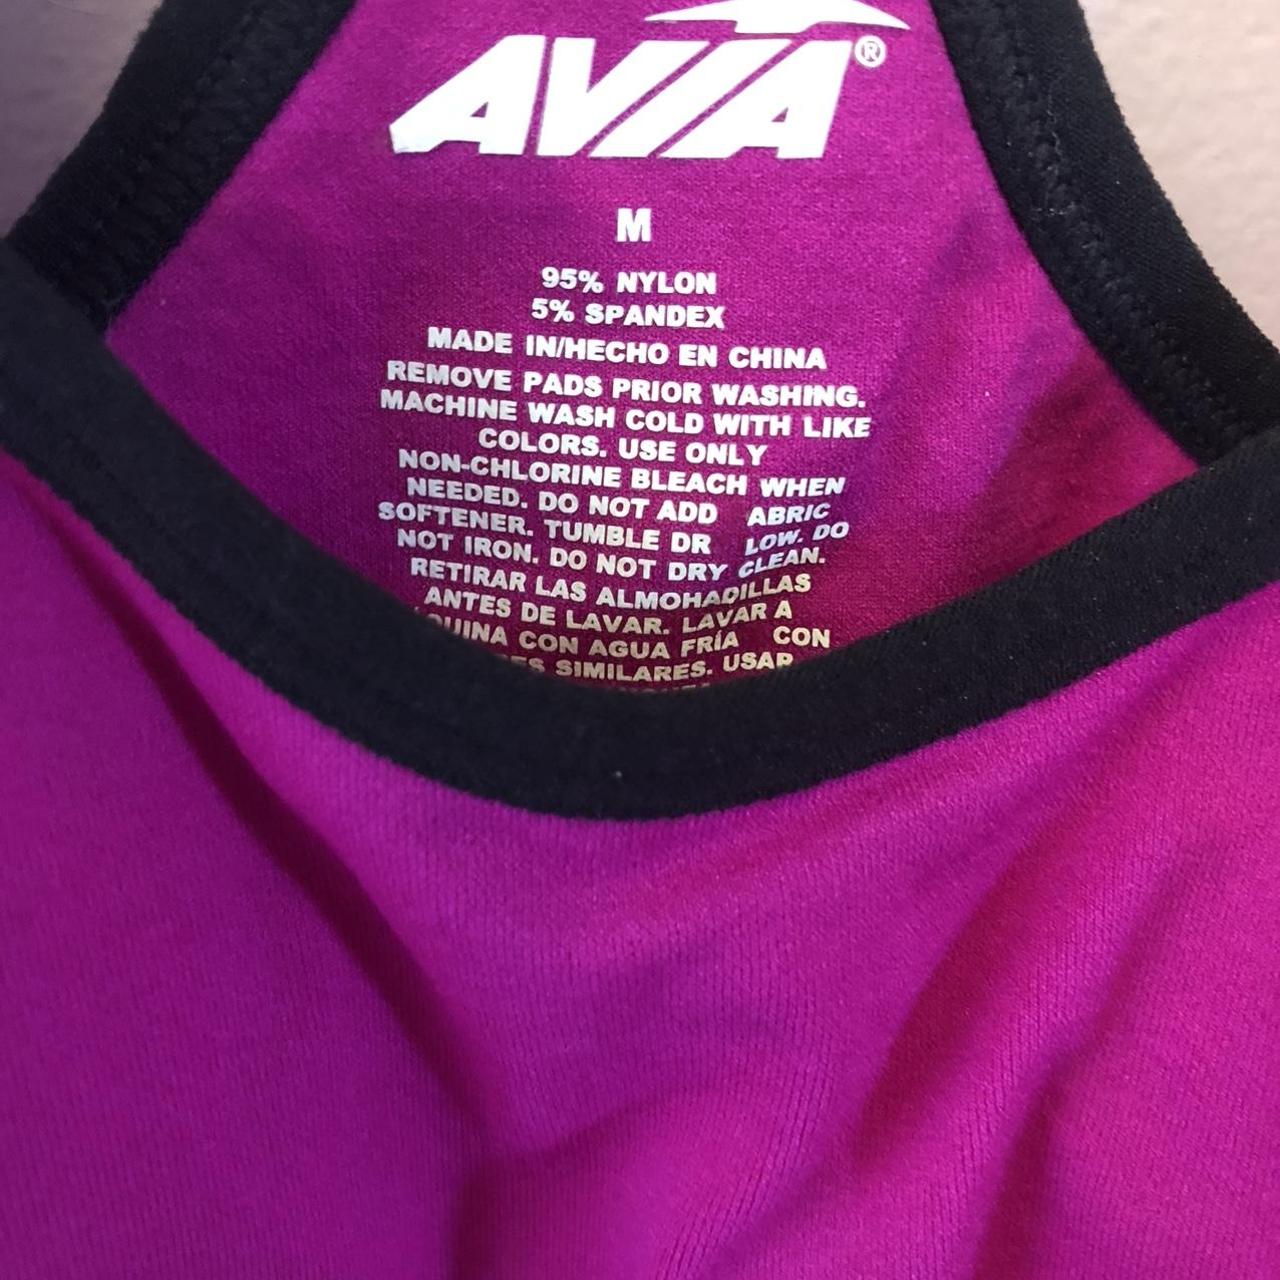 Beauty Content Avia Sportswear